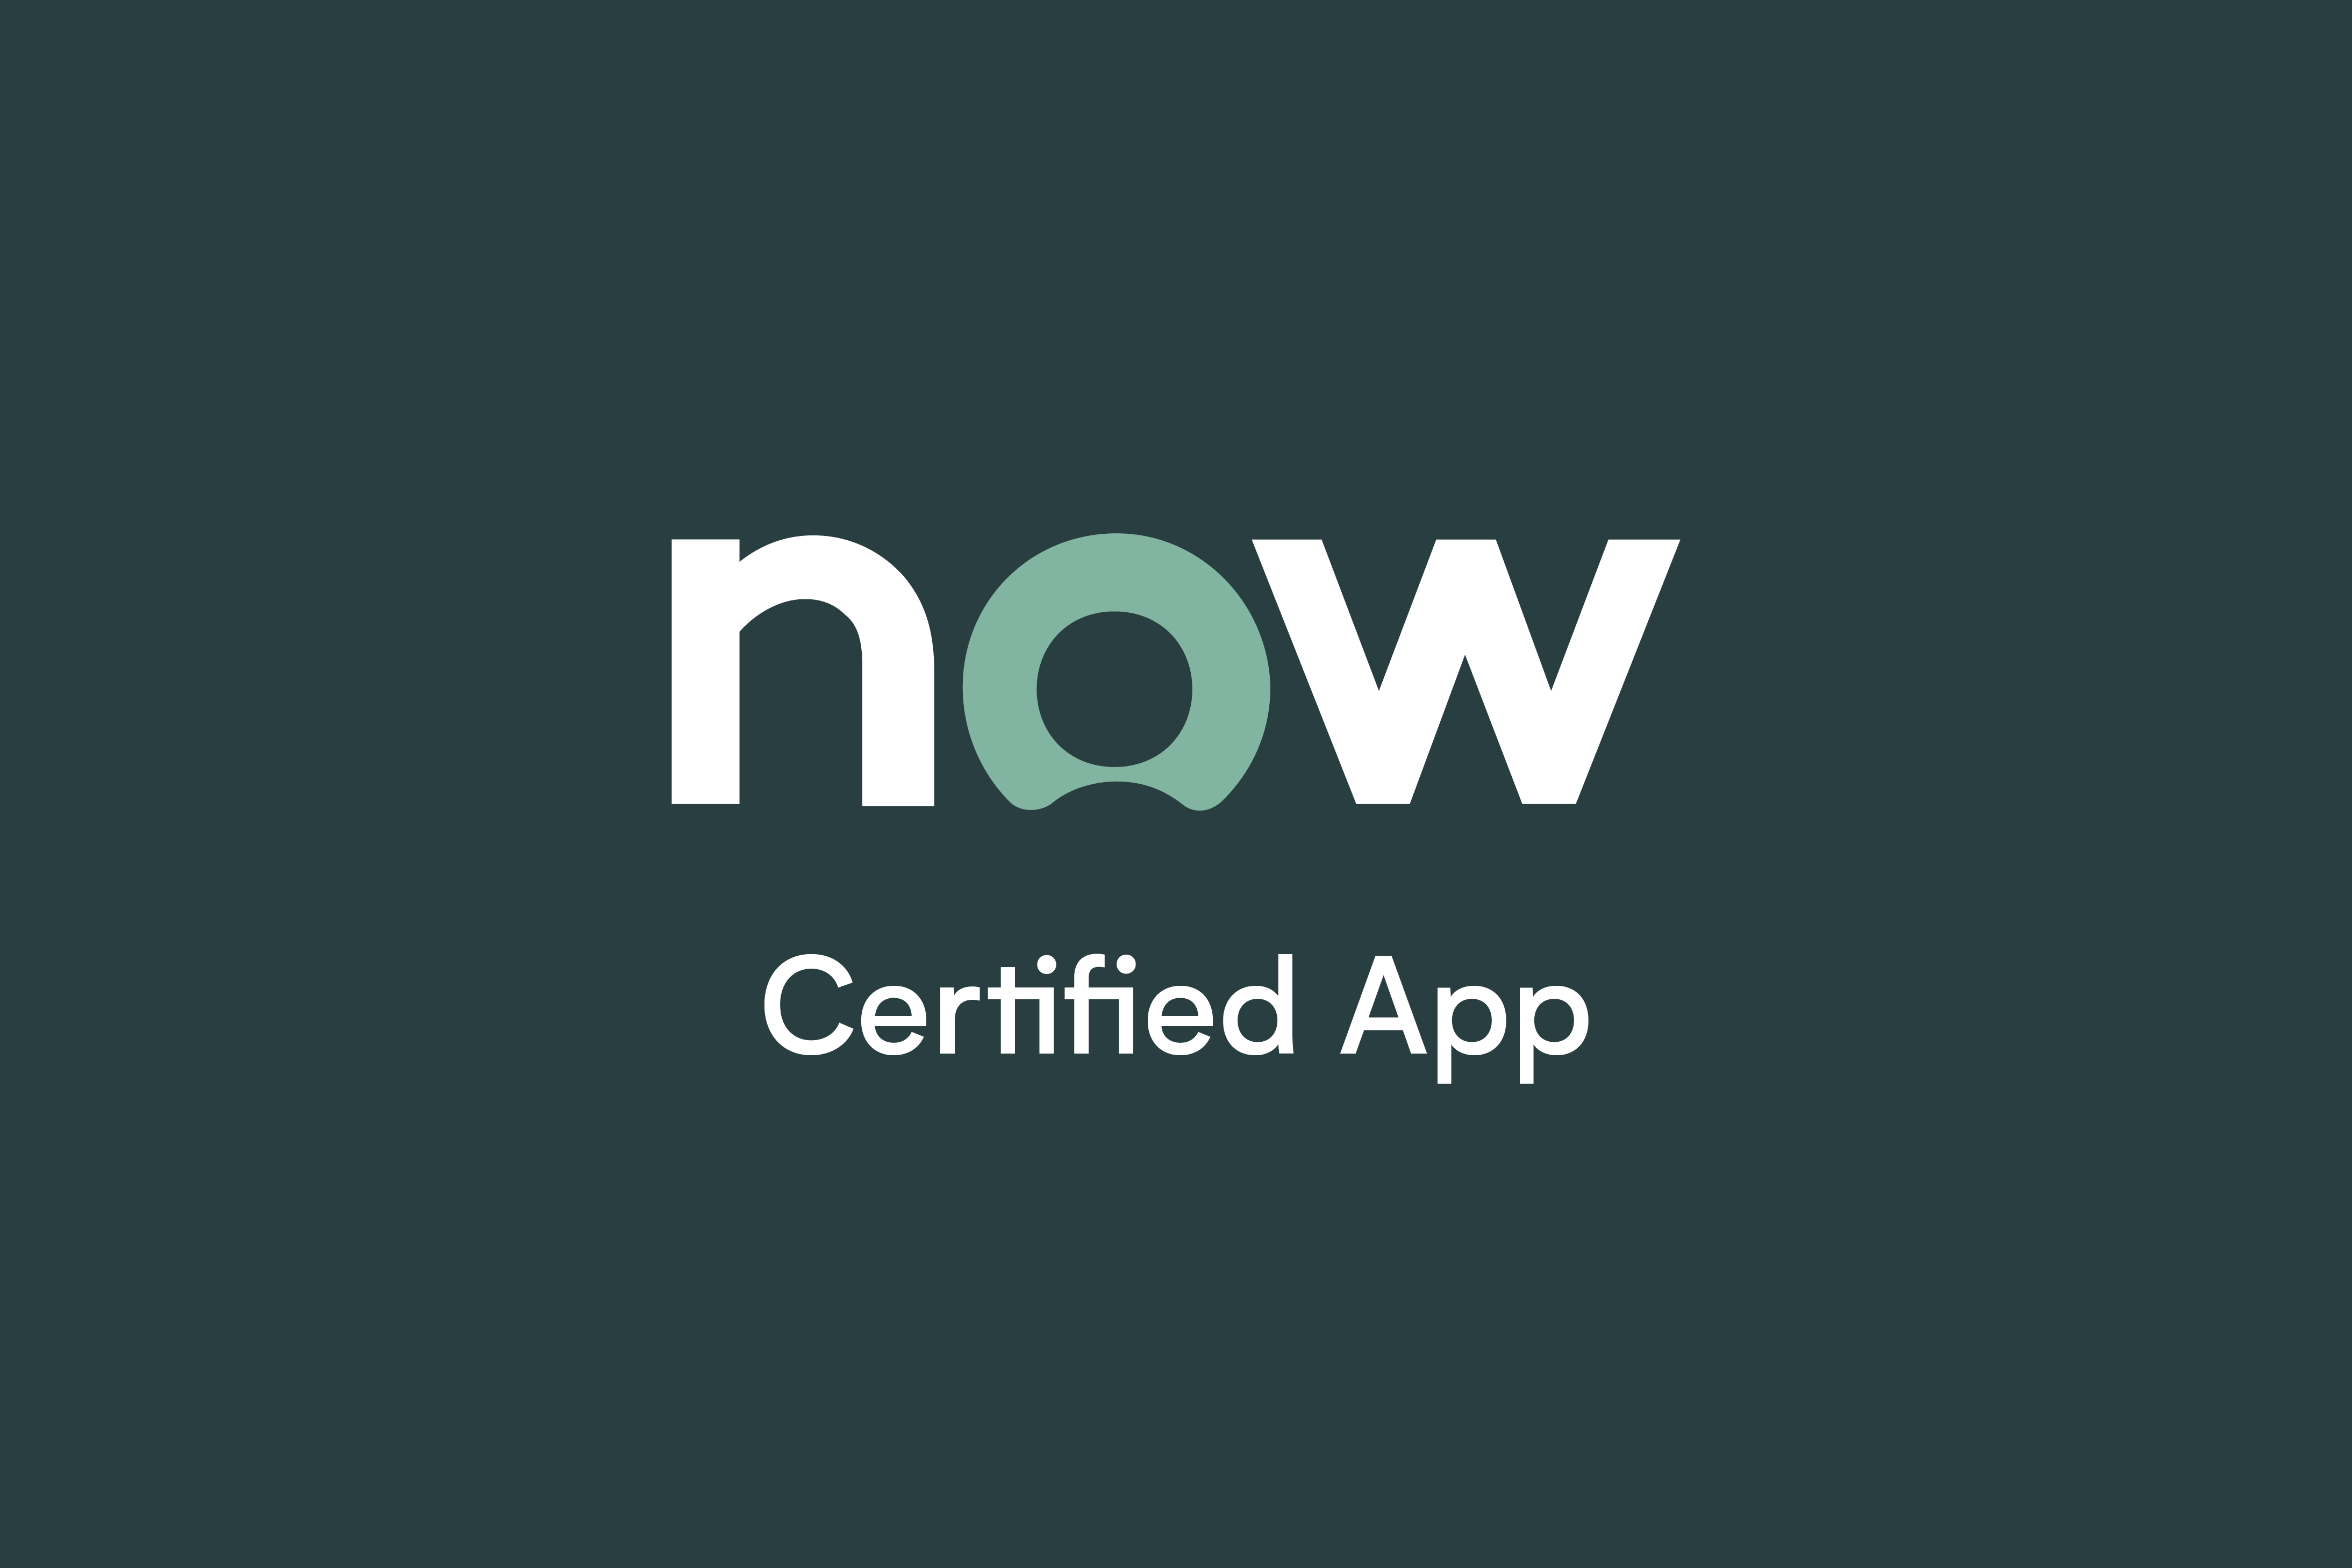 Now_CertifiedApp (1)